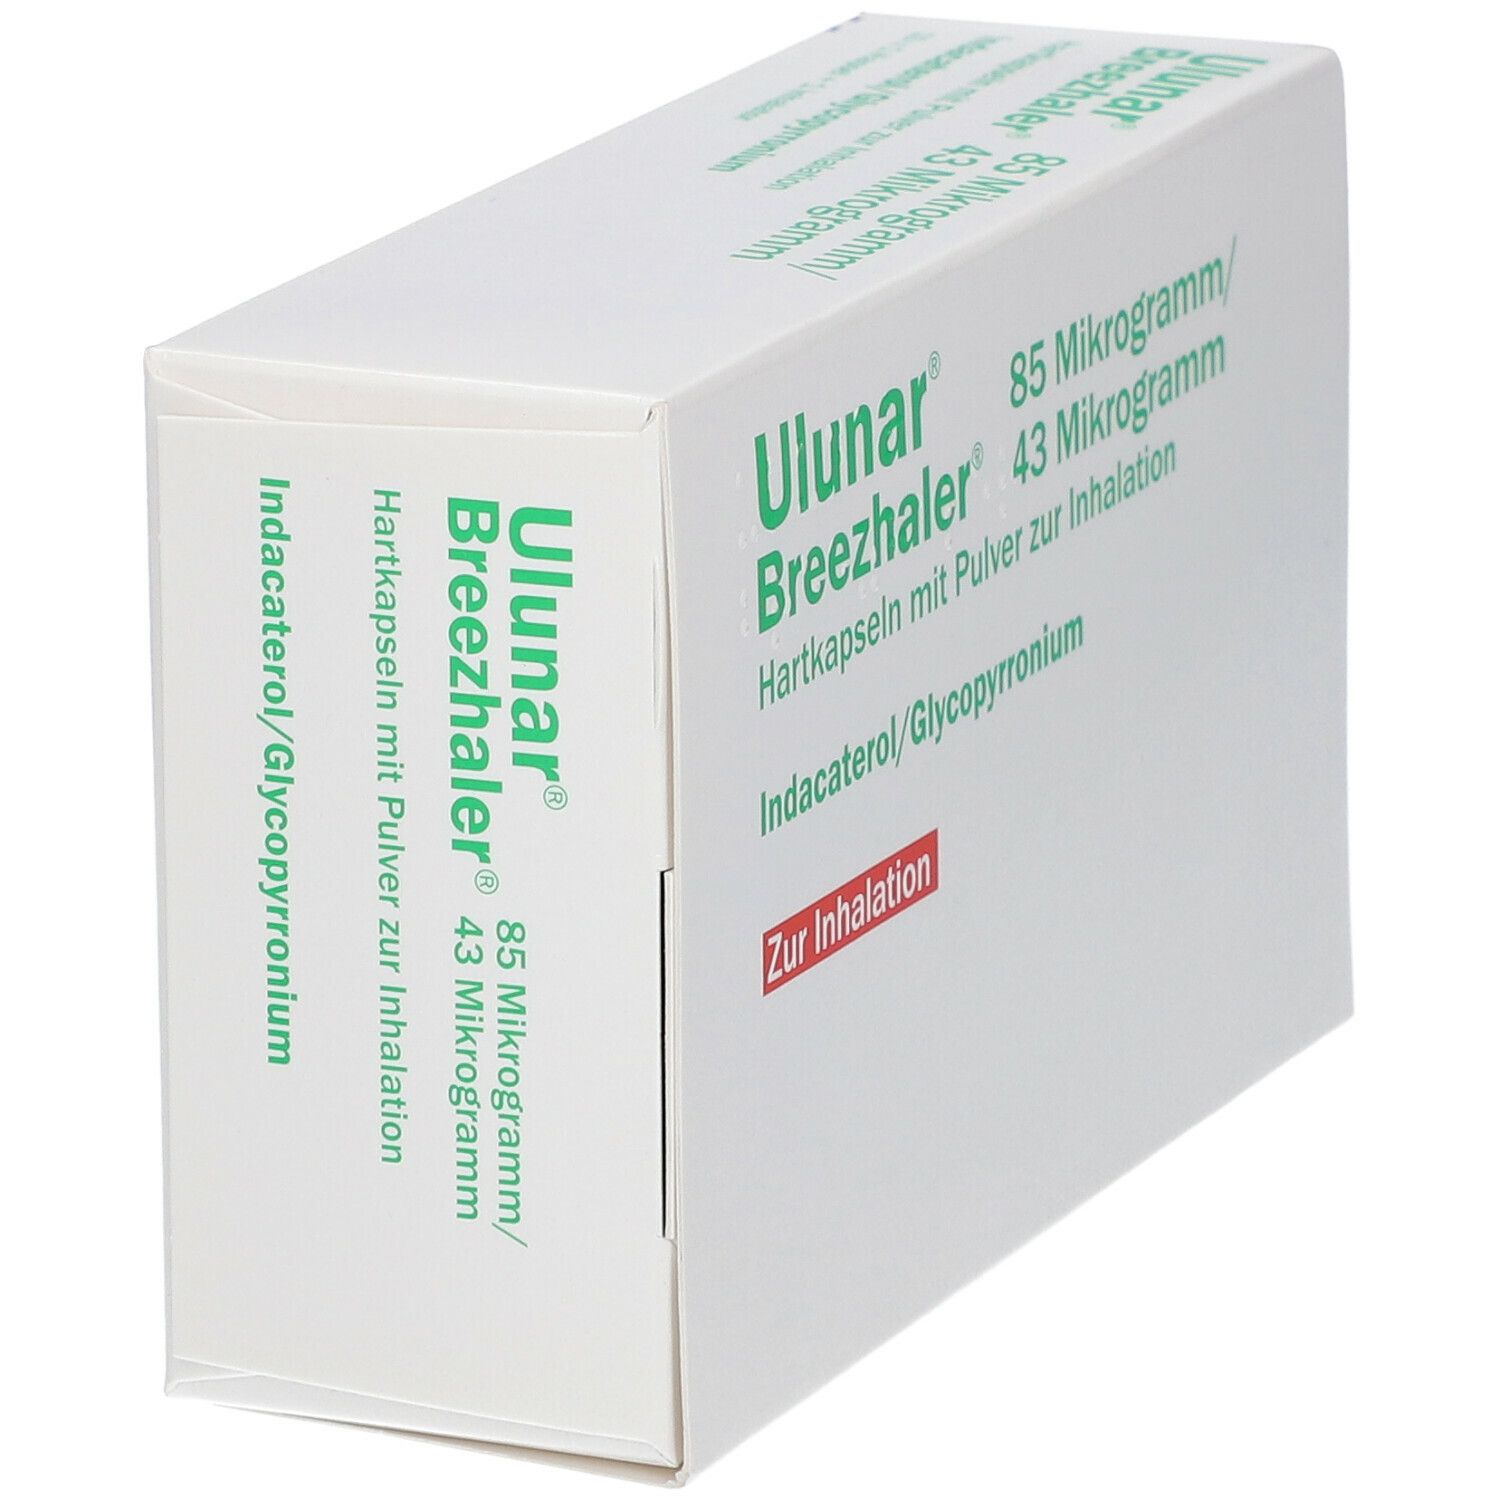 Ulunar® Breezhaler® 85 µg/43 µg